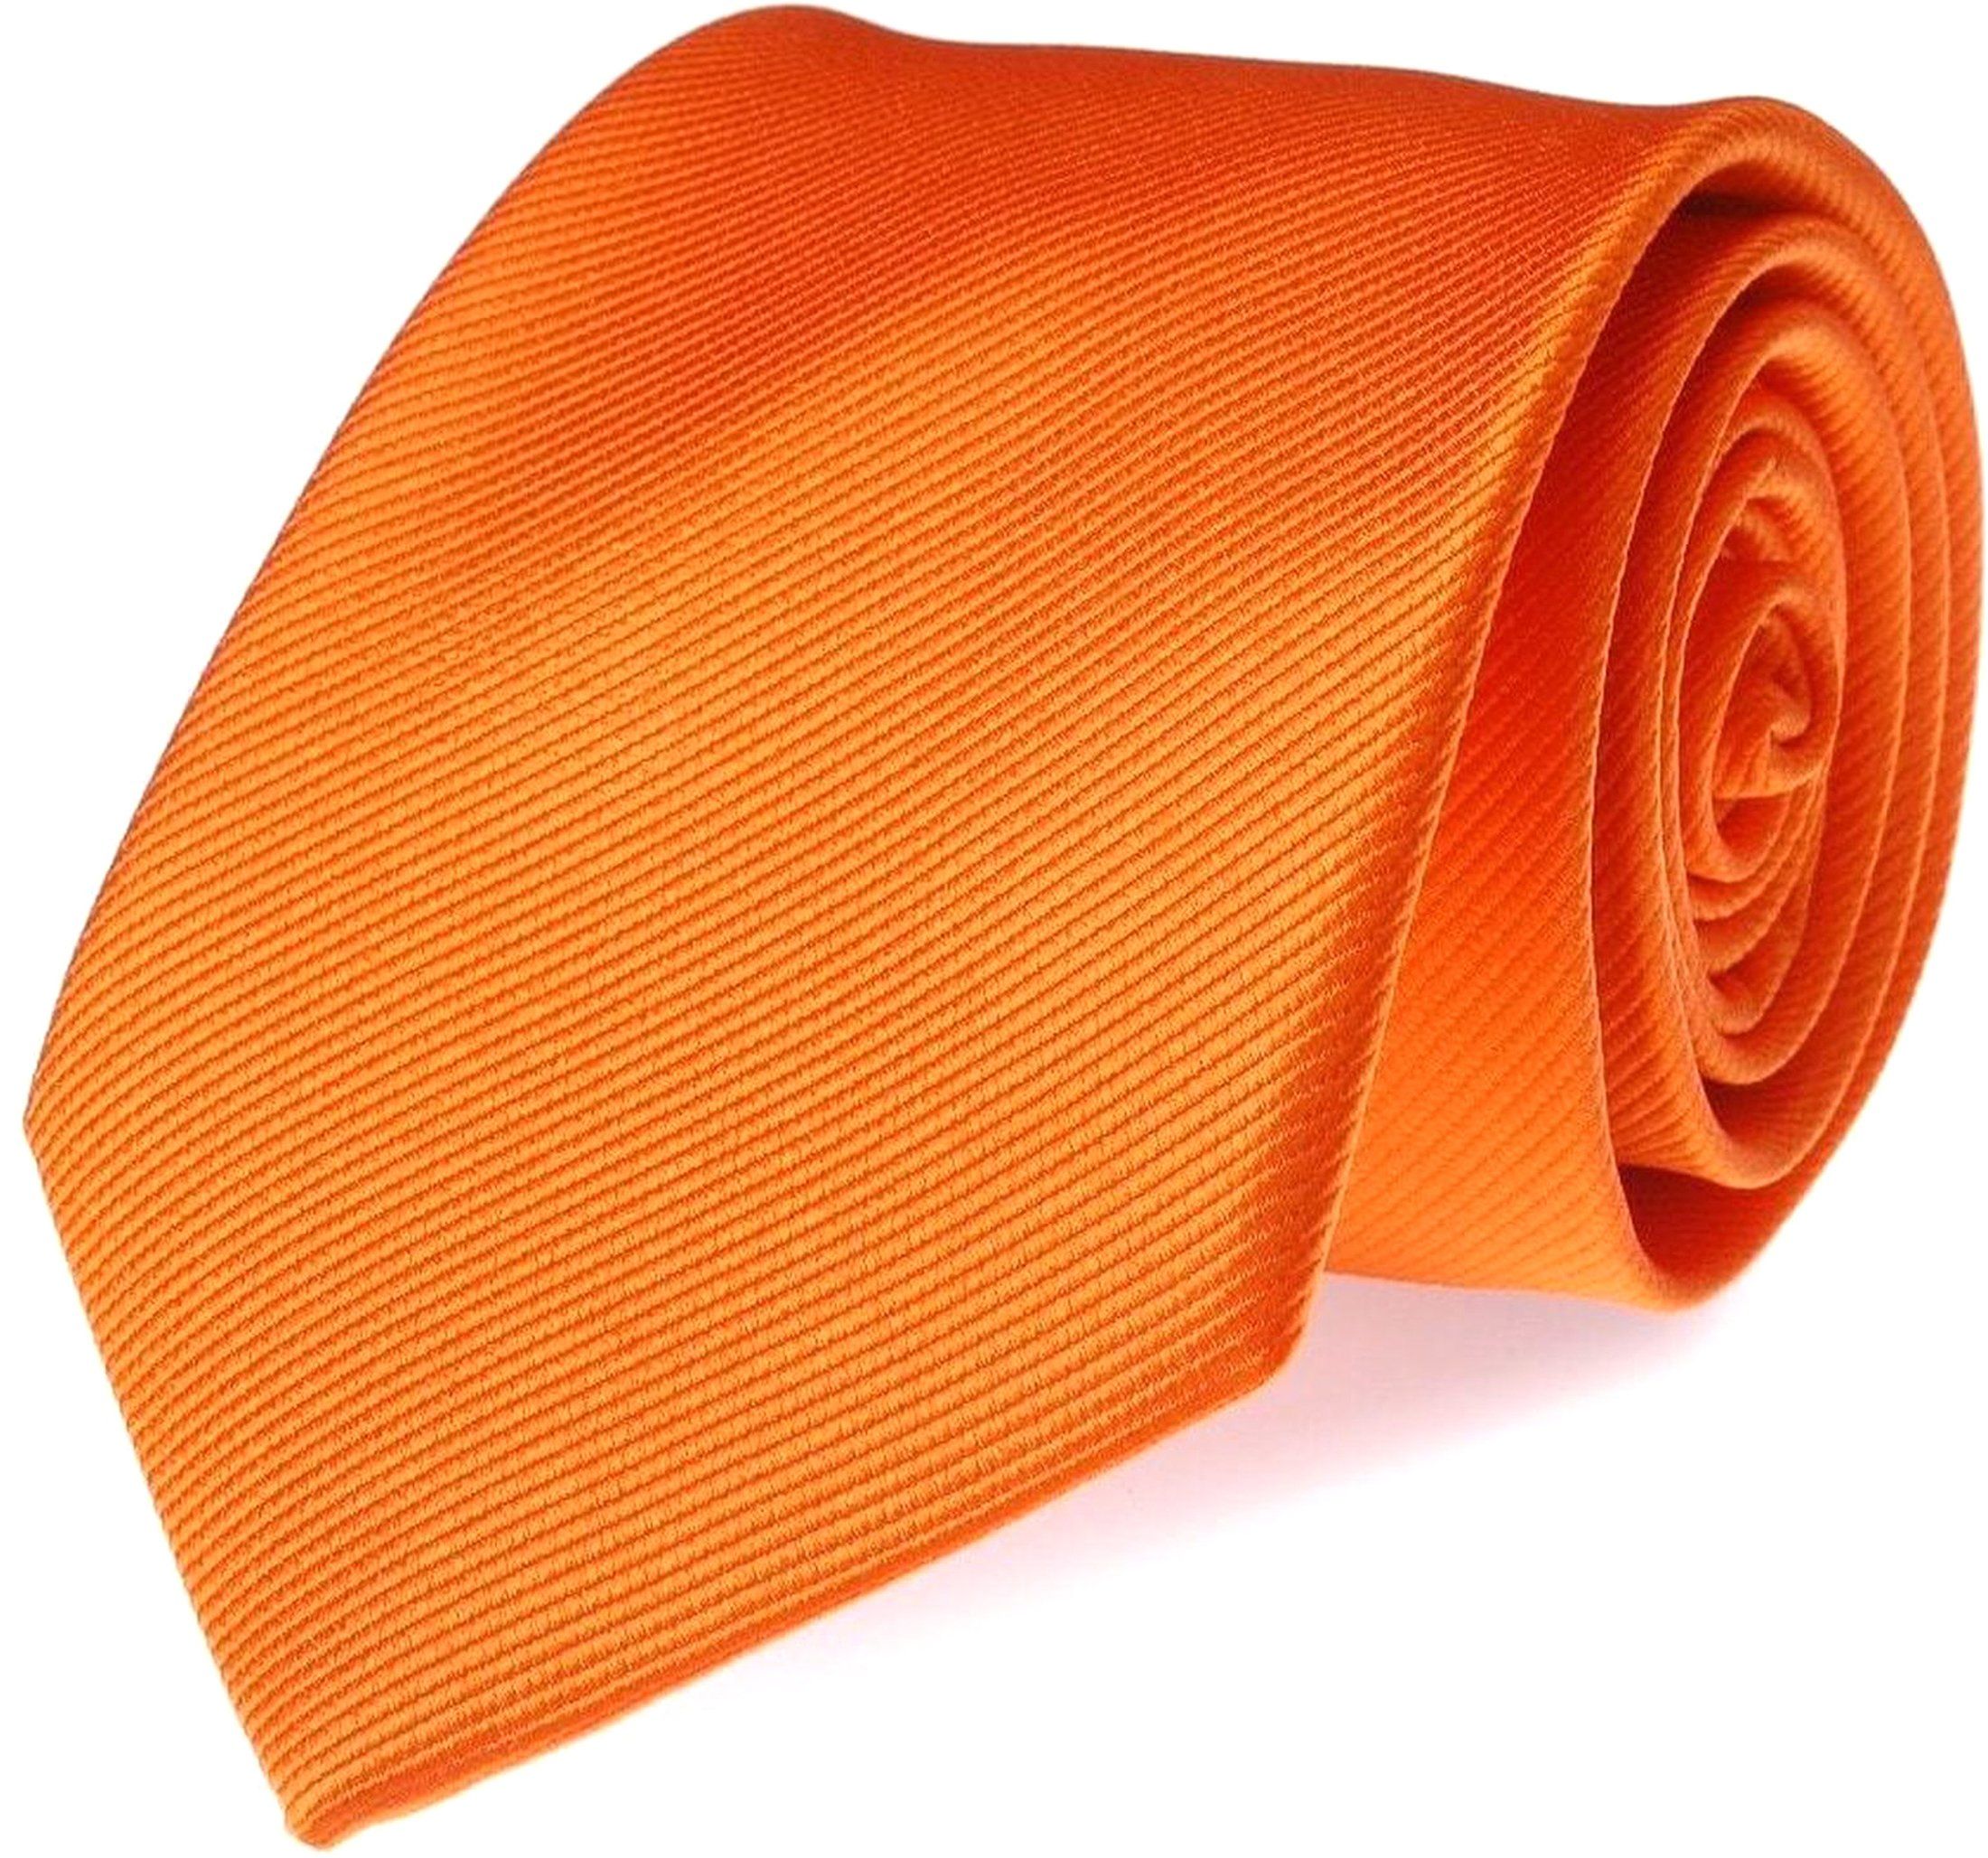 Cravate Uni F01 Orange